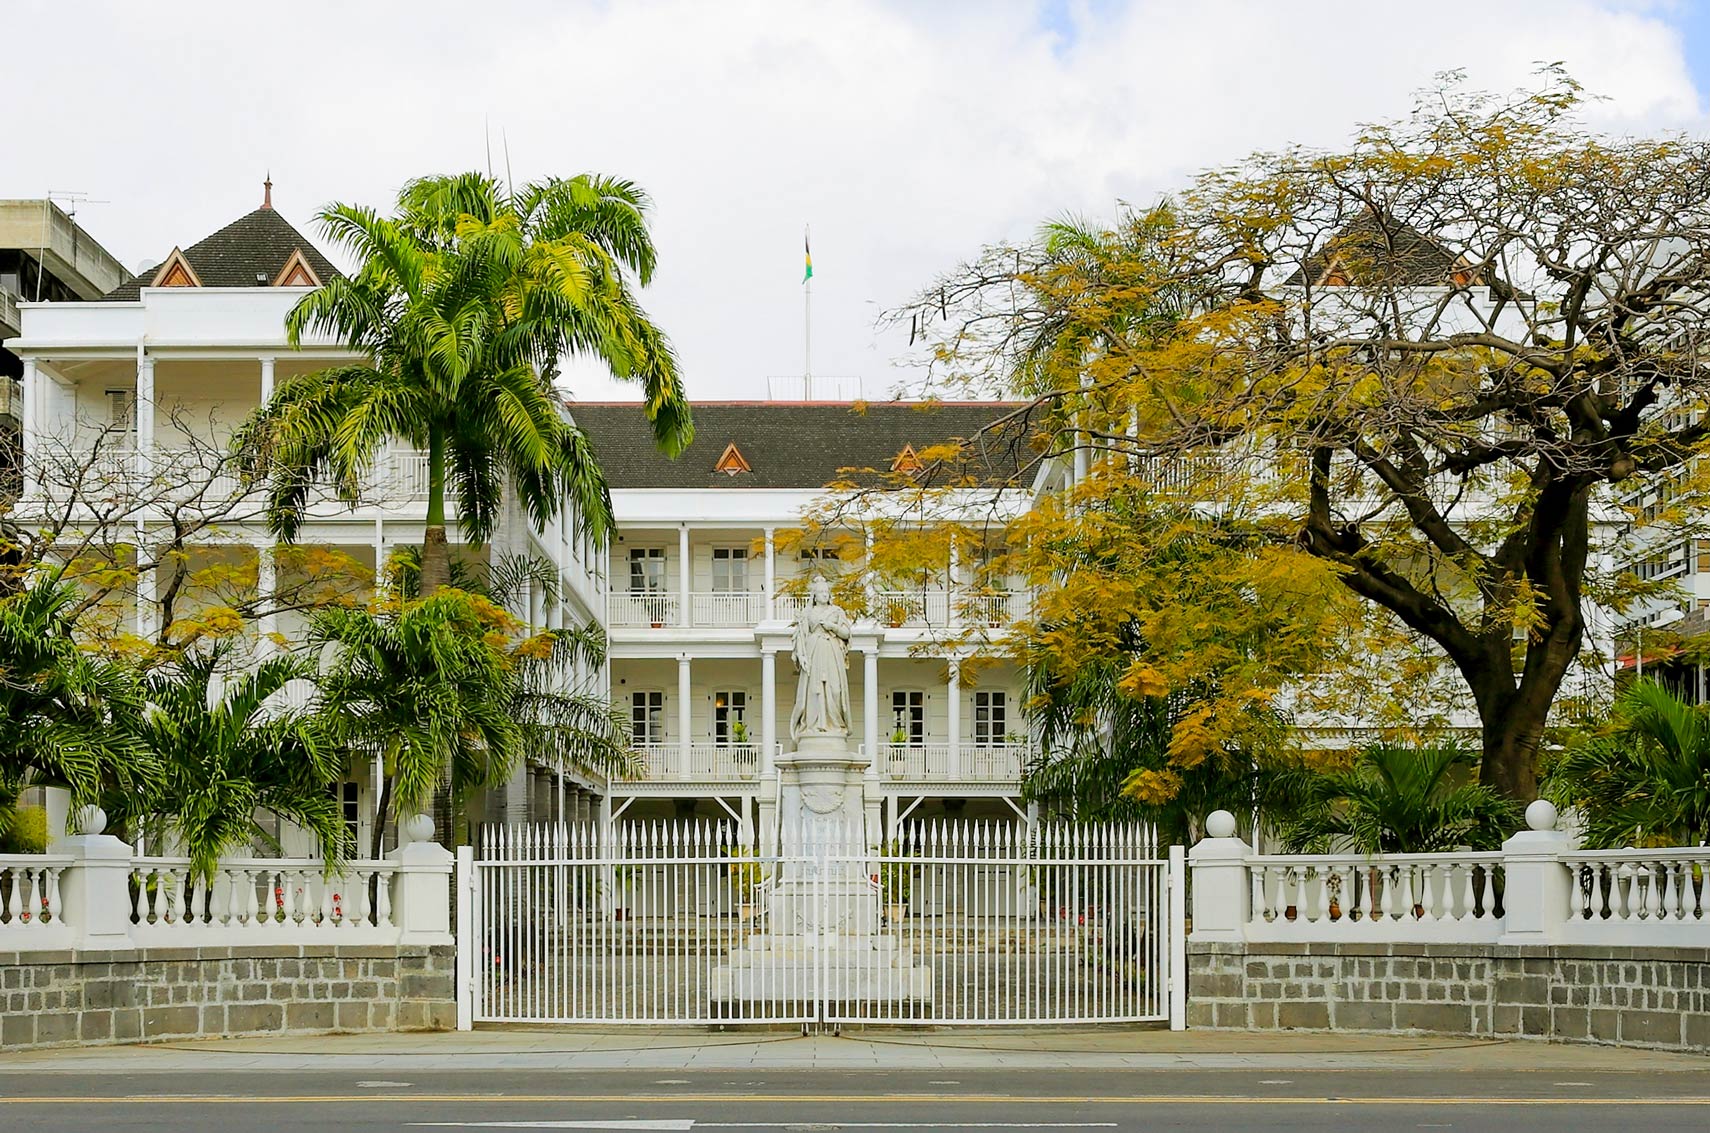 Mauritius Parliament building in Port Louis